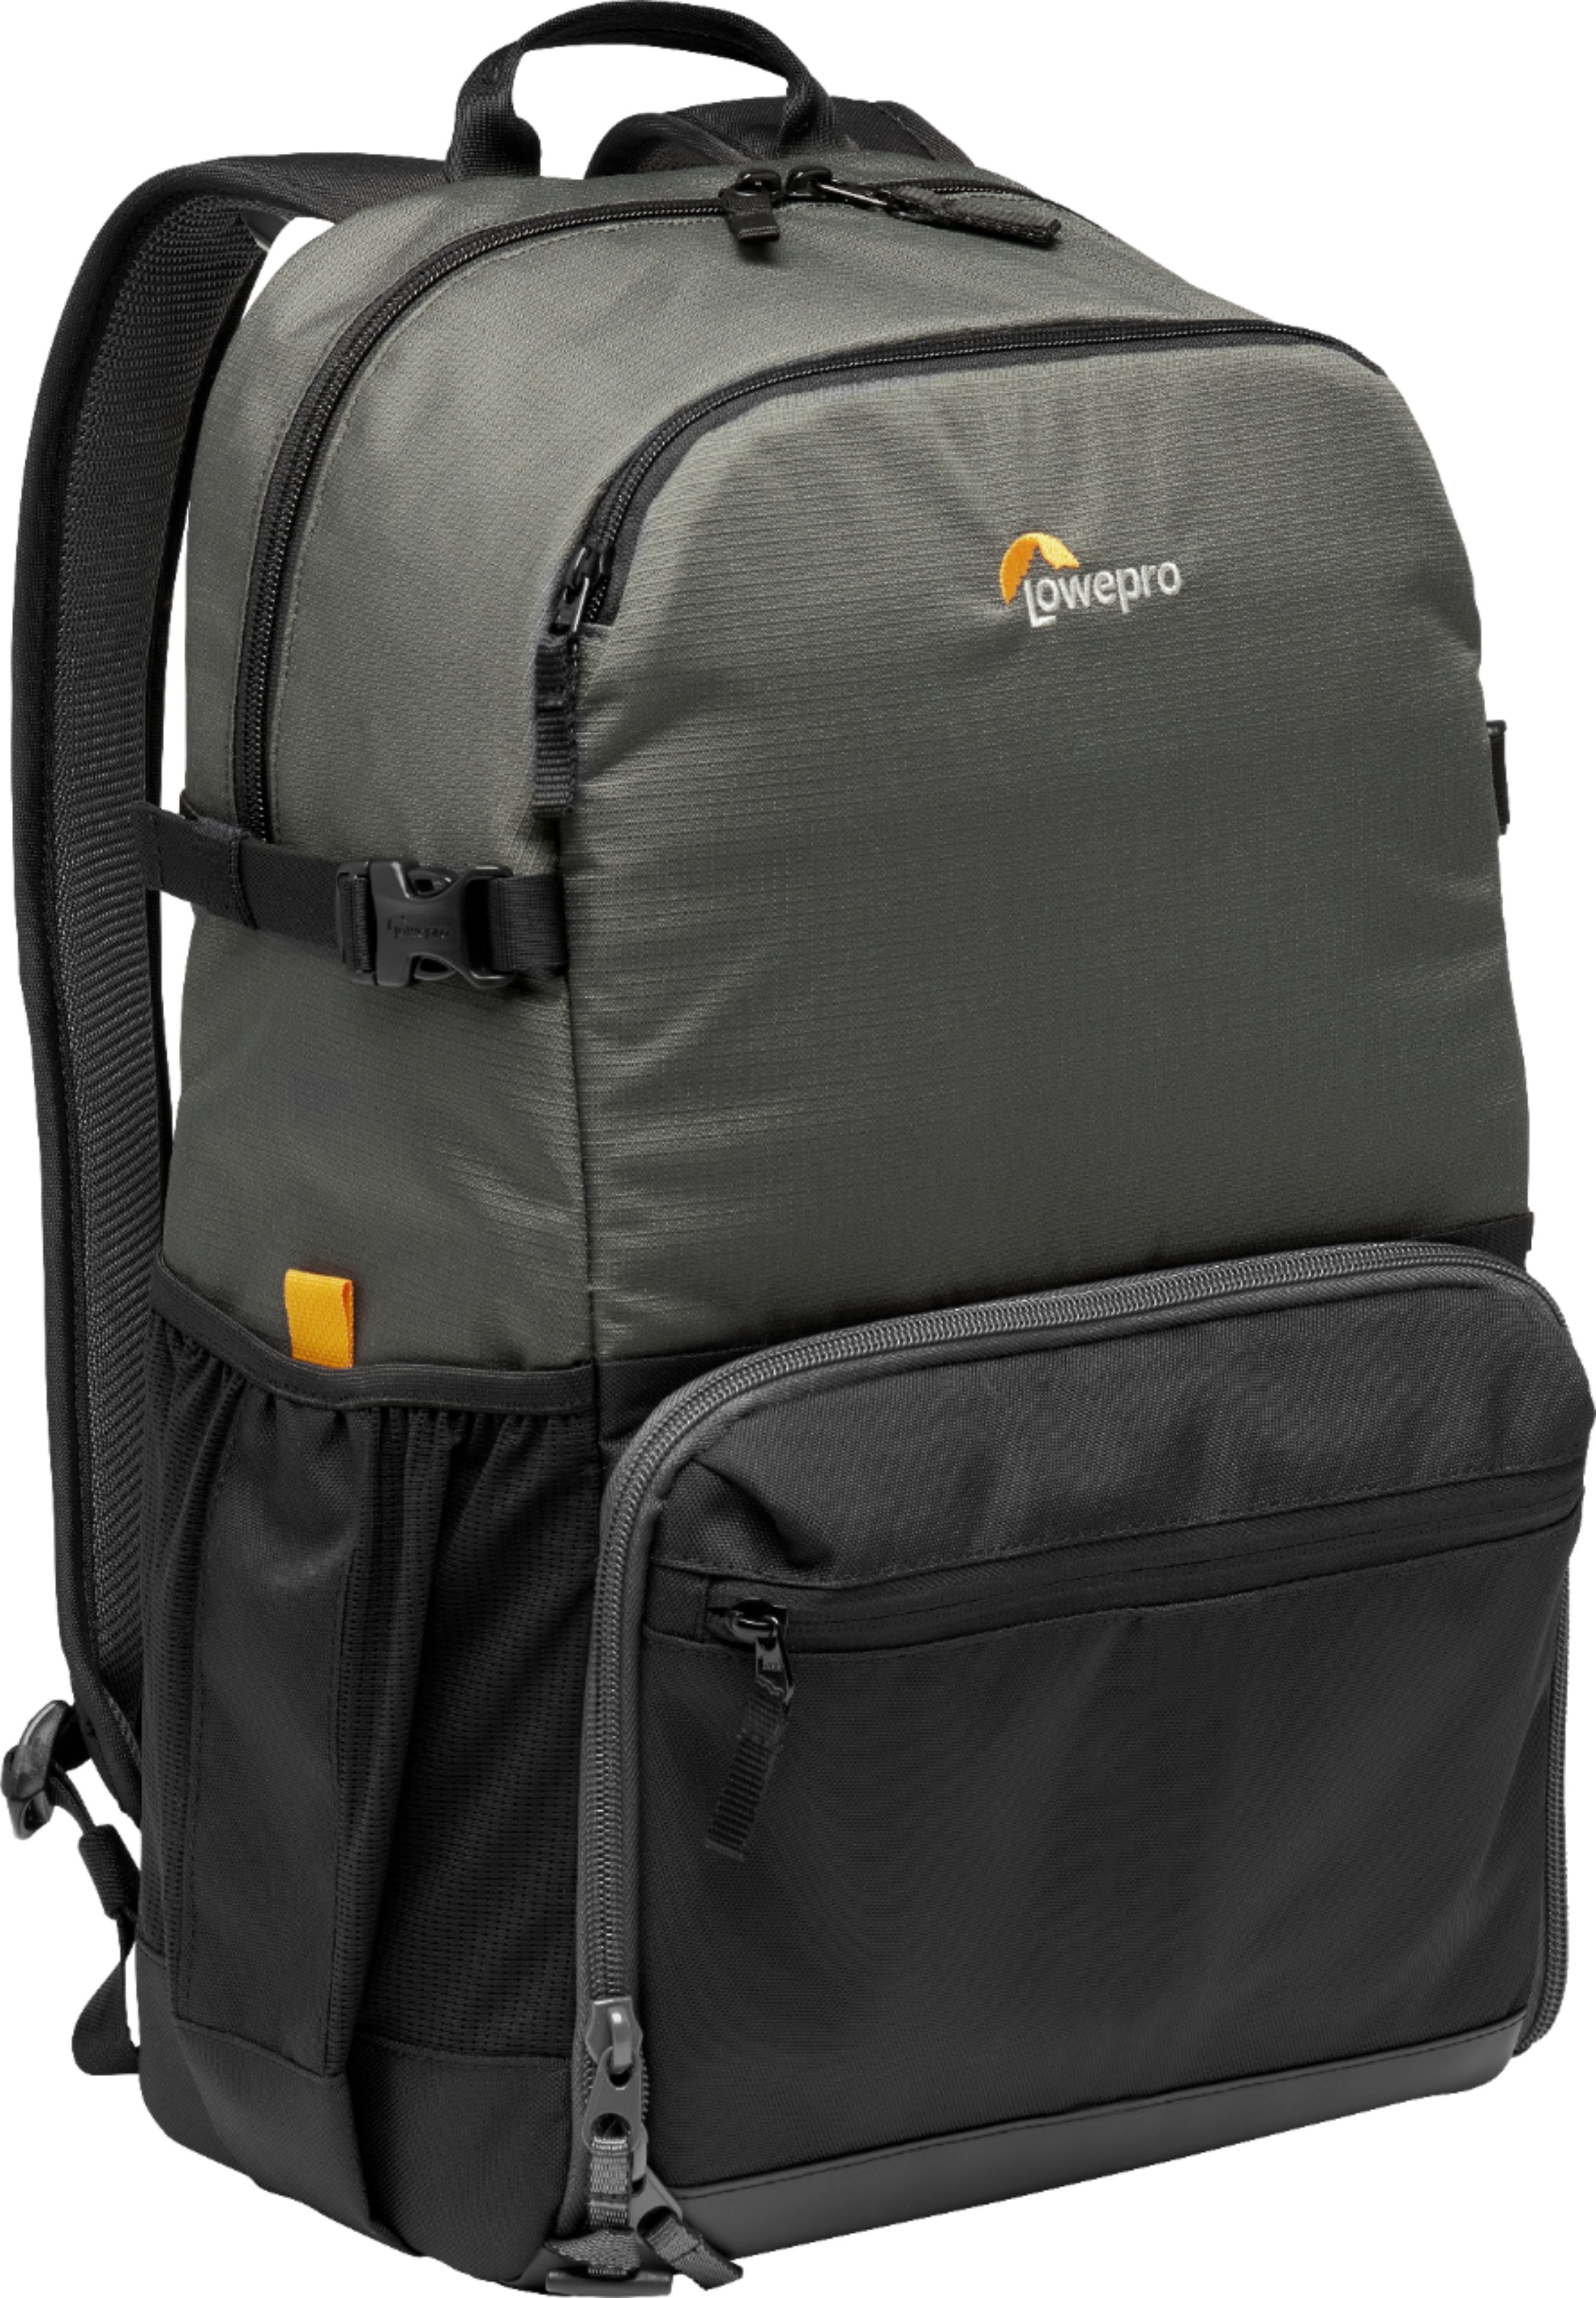 Lowepro Truckee BP 250 Camera Backpack Black LP37237 - Best Buy